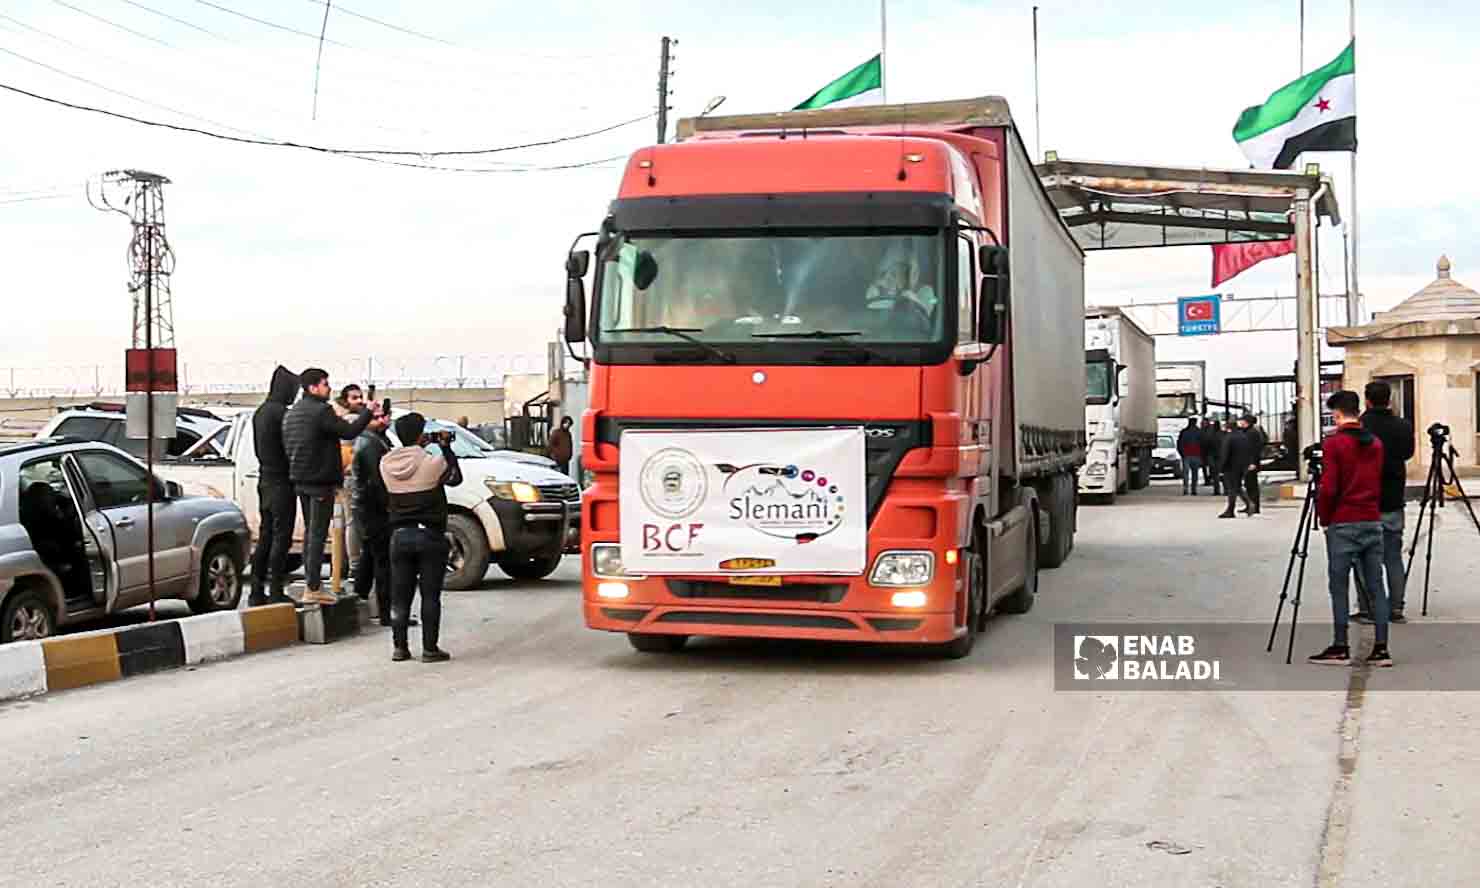 مساعدات إغاثية من "كردستان العراق" إلى مدينة جنديرس بريف حلب تدخل عبر معبر باب السلامة  - 10شباط 2023 (عنب بلدي/ ديان جنباز)